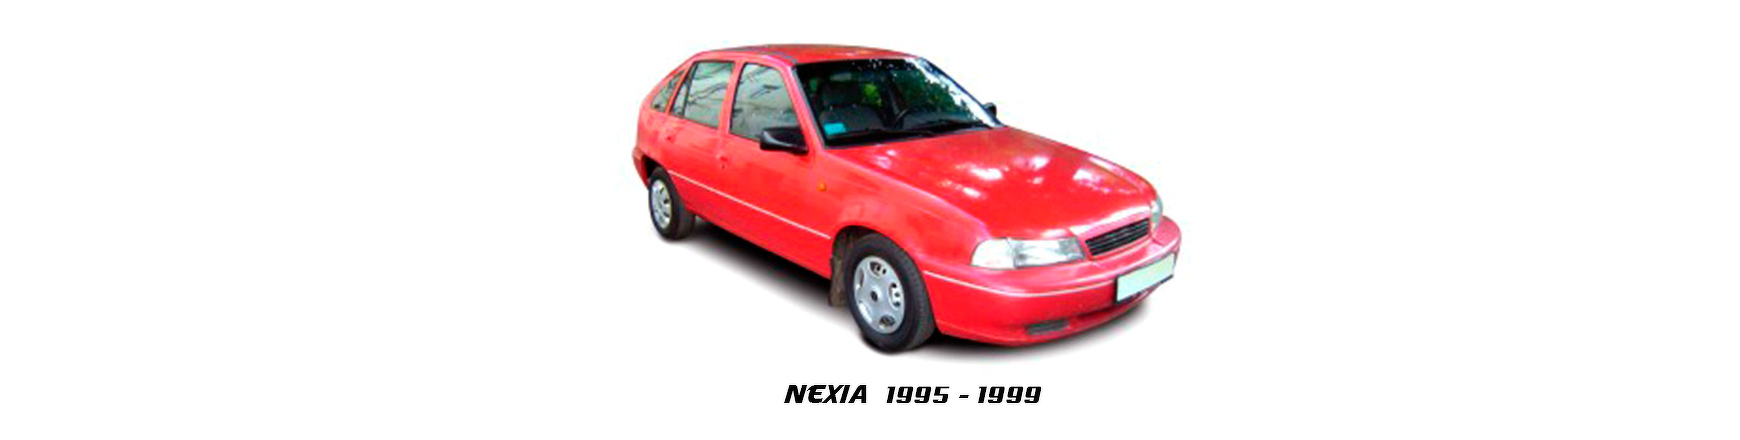 Piezas y Recambios de Daewoo Nexia de 1995 a 1999. Visite Veramauto.es